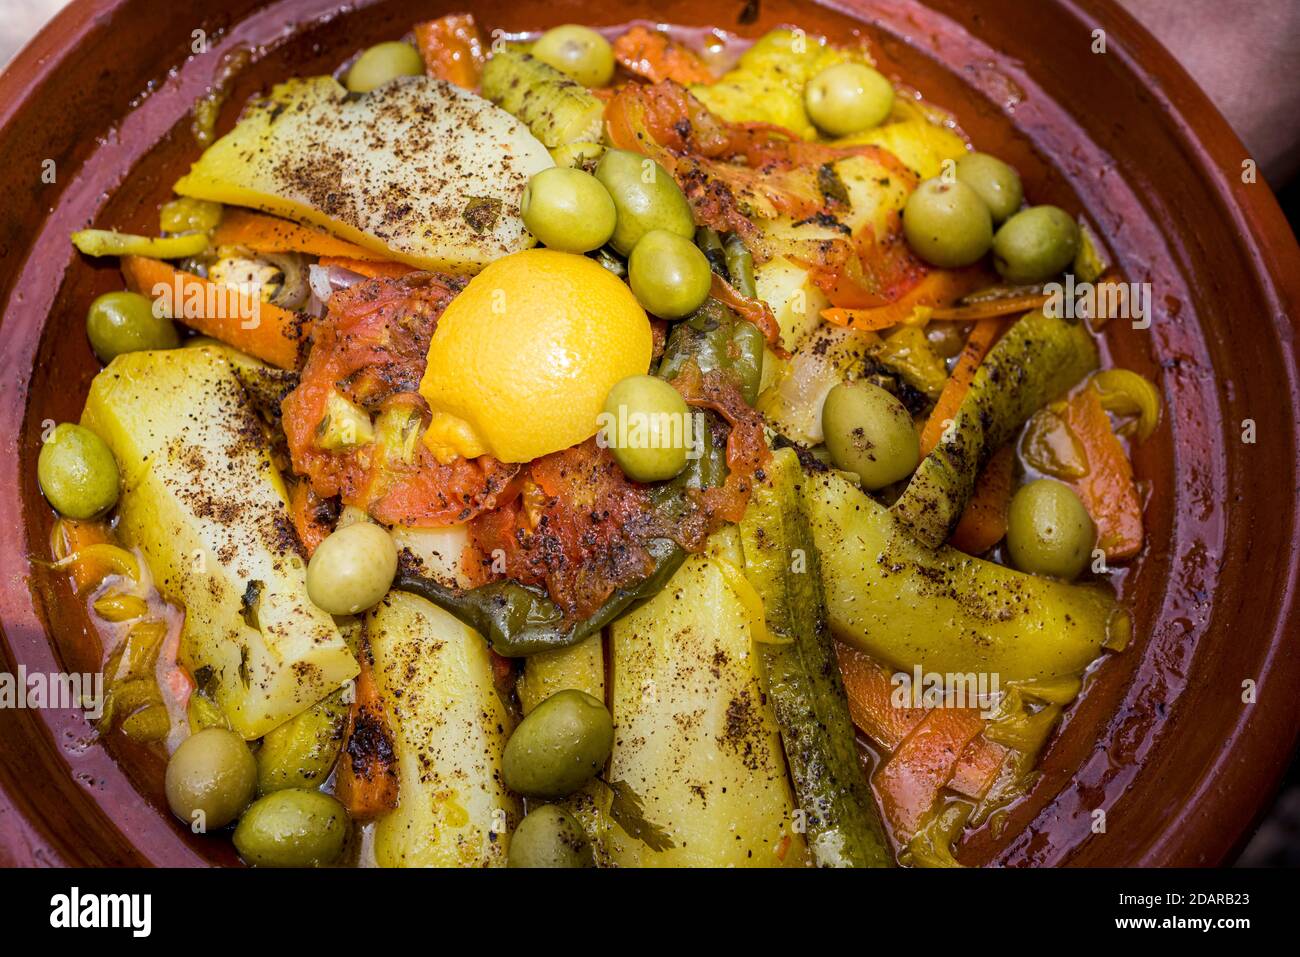 Tajine, typisch marokkanische Küche in Tontopf, Huhn mit Zitrone und Oliven, Gemüse und Kartoffeln, Marokko Stockfoto